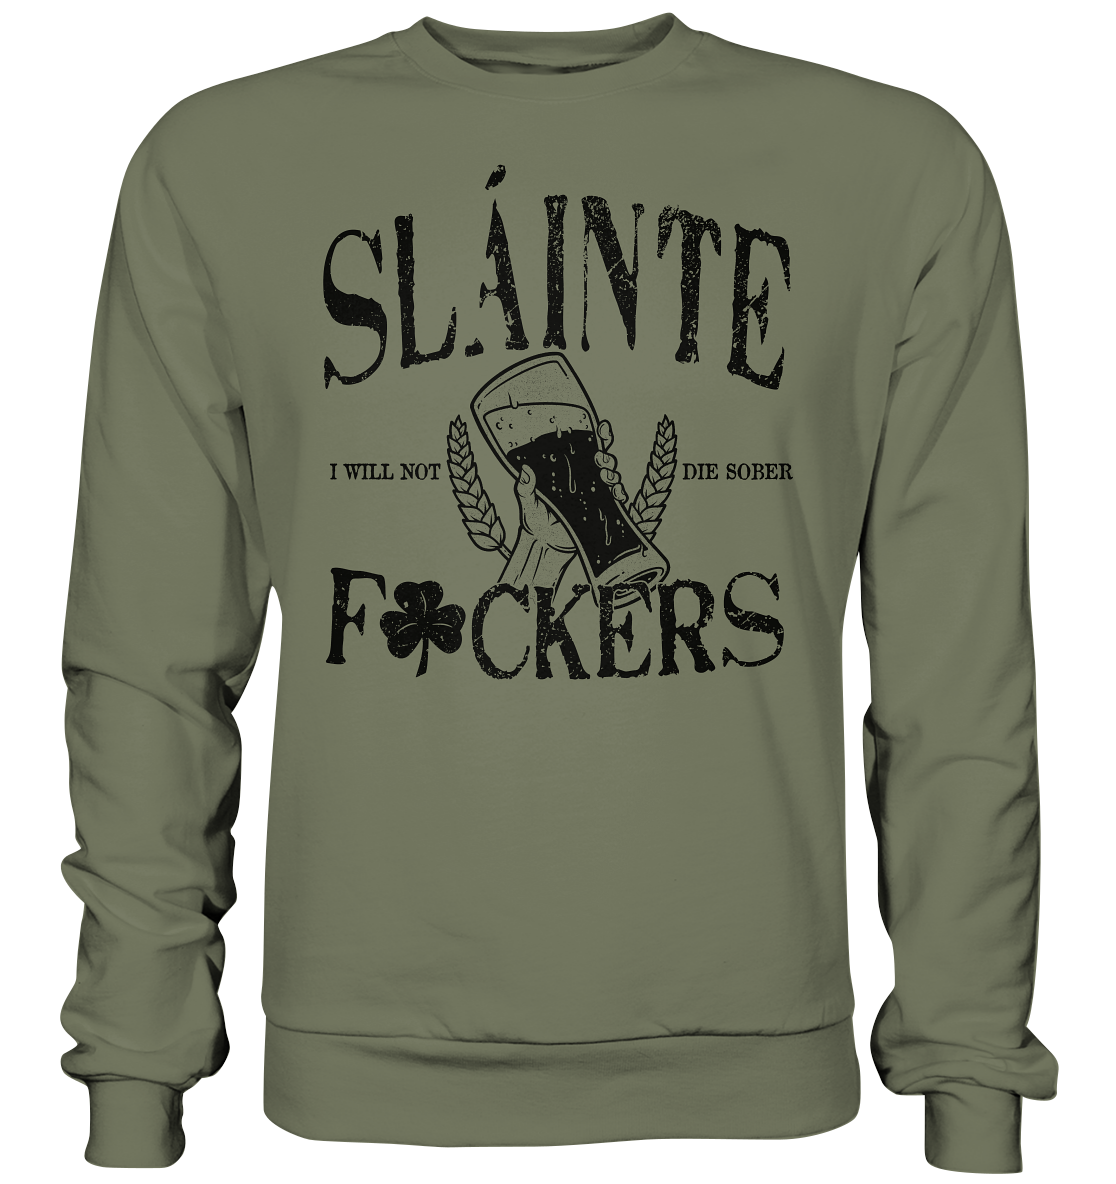 Sláinte "F*ckers" - Premium Sweatshirt